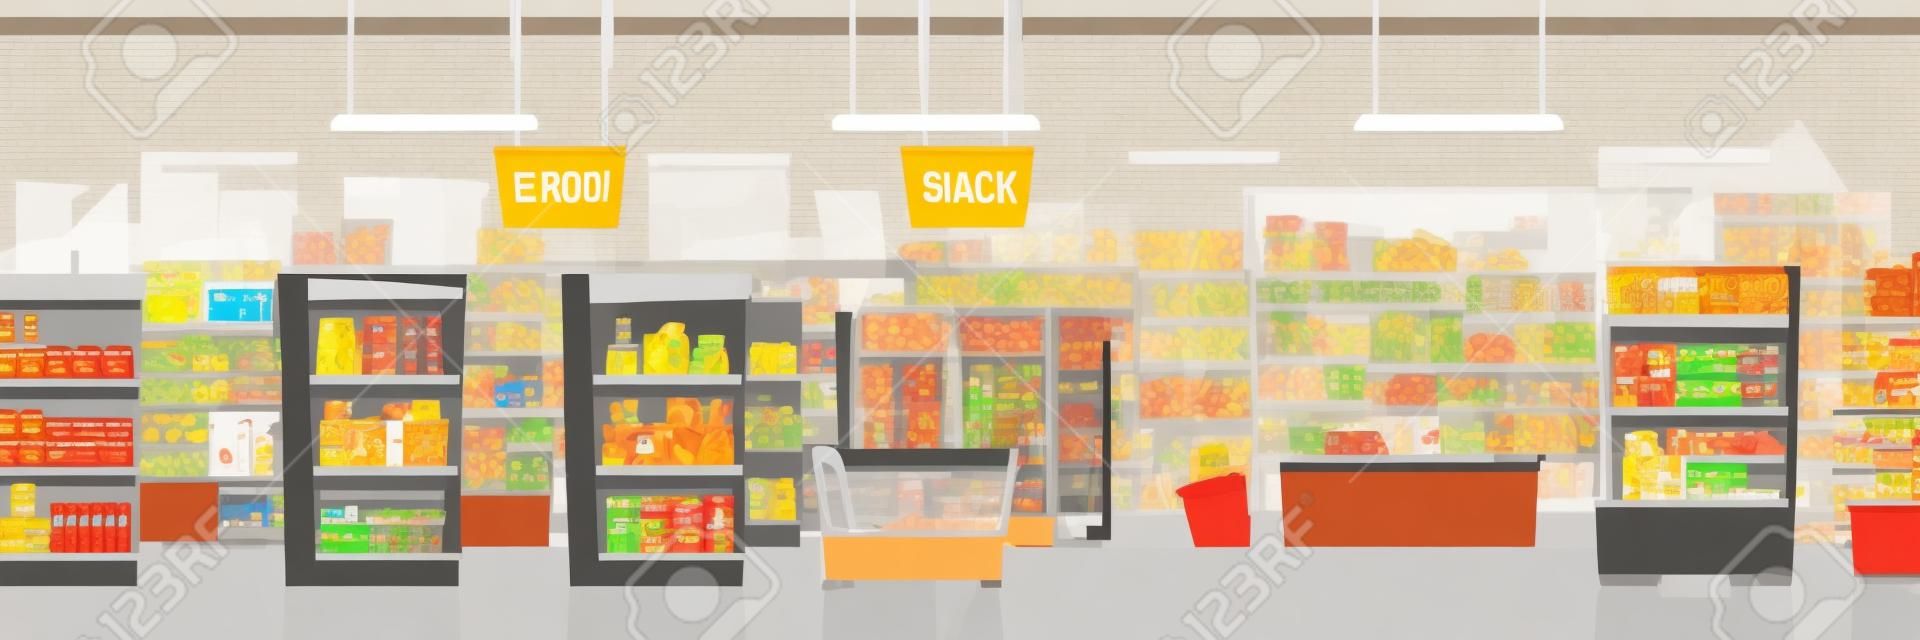 Supermarket lub duży sklep spożywczy handel pokój wnętrze kreskówka tło wektor z regałami pełnymi produktów spożywczych i owoców, lodówek z napojami, akwarium i kasą na ilustracji wyjścia